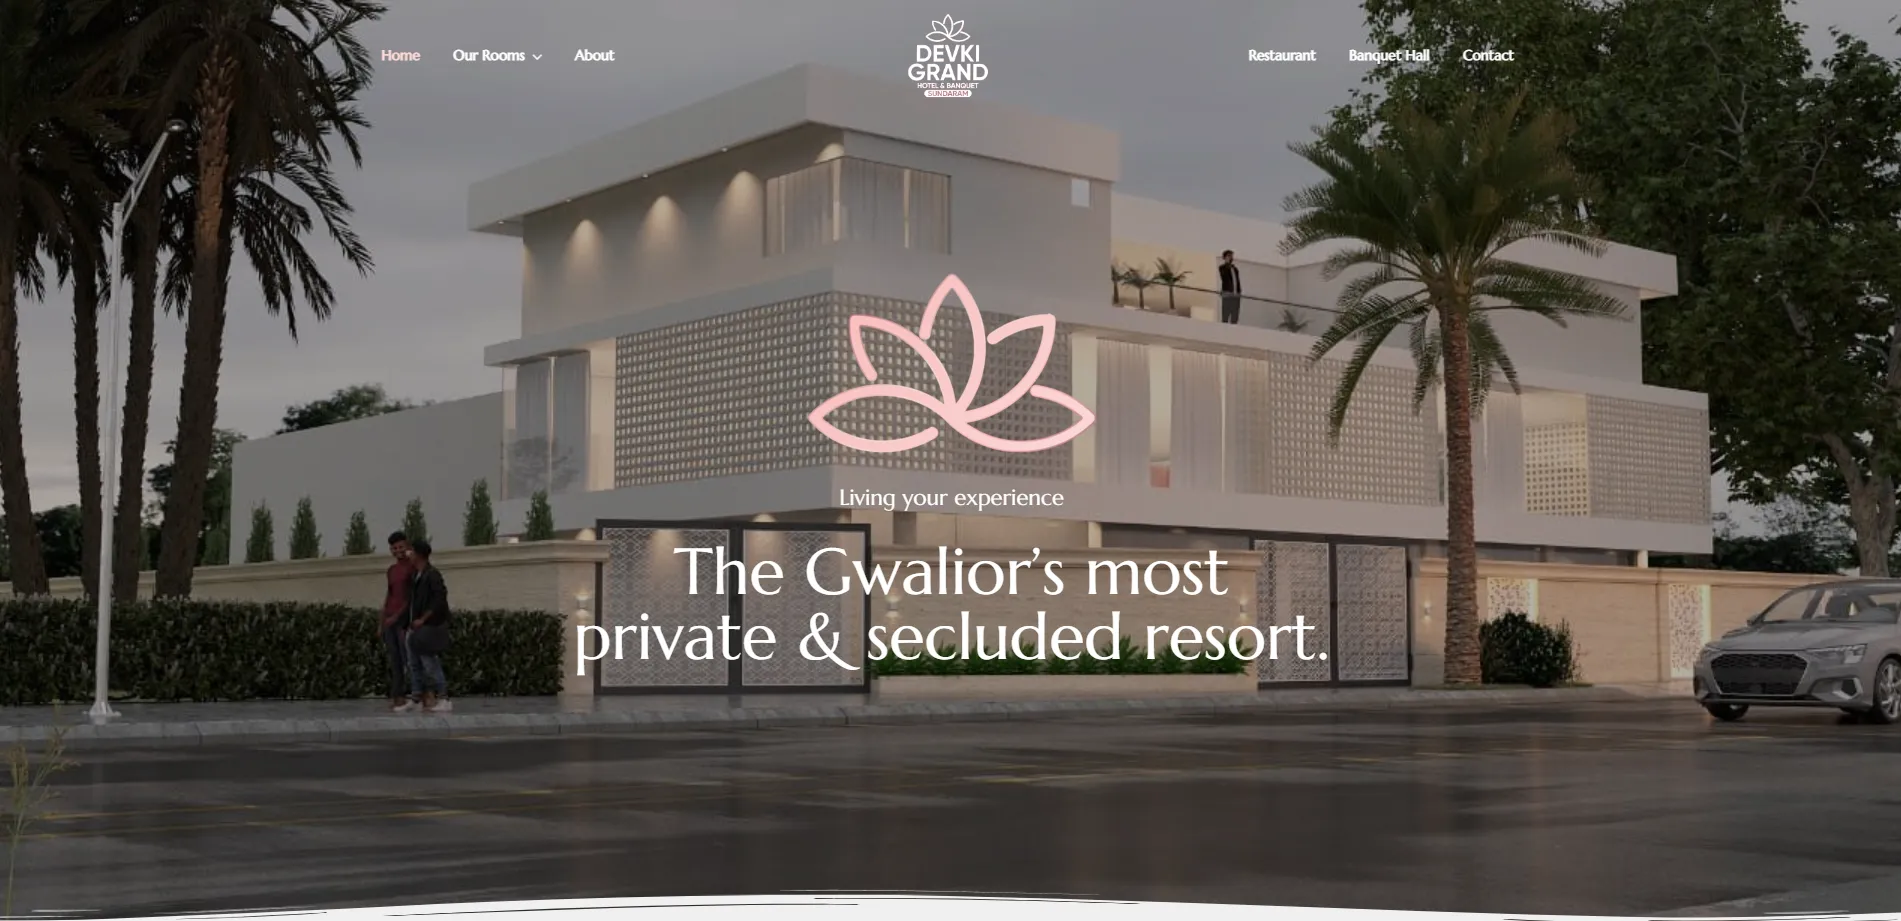 Devki Grand Hotel Website